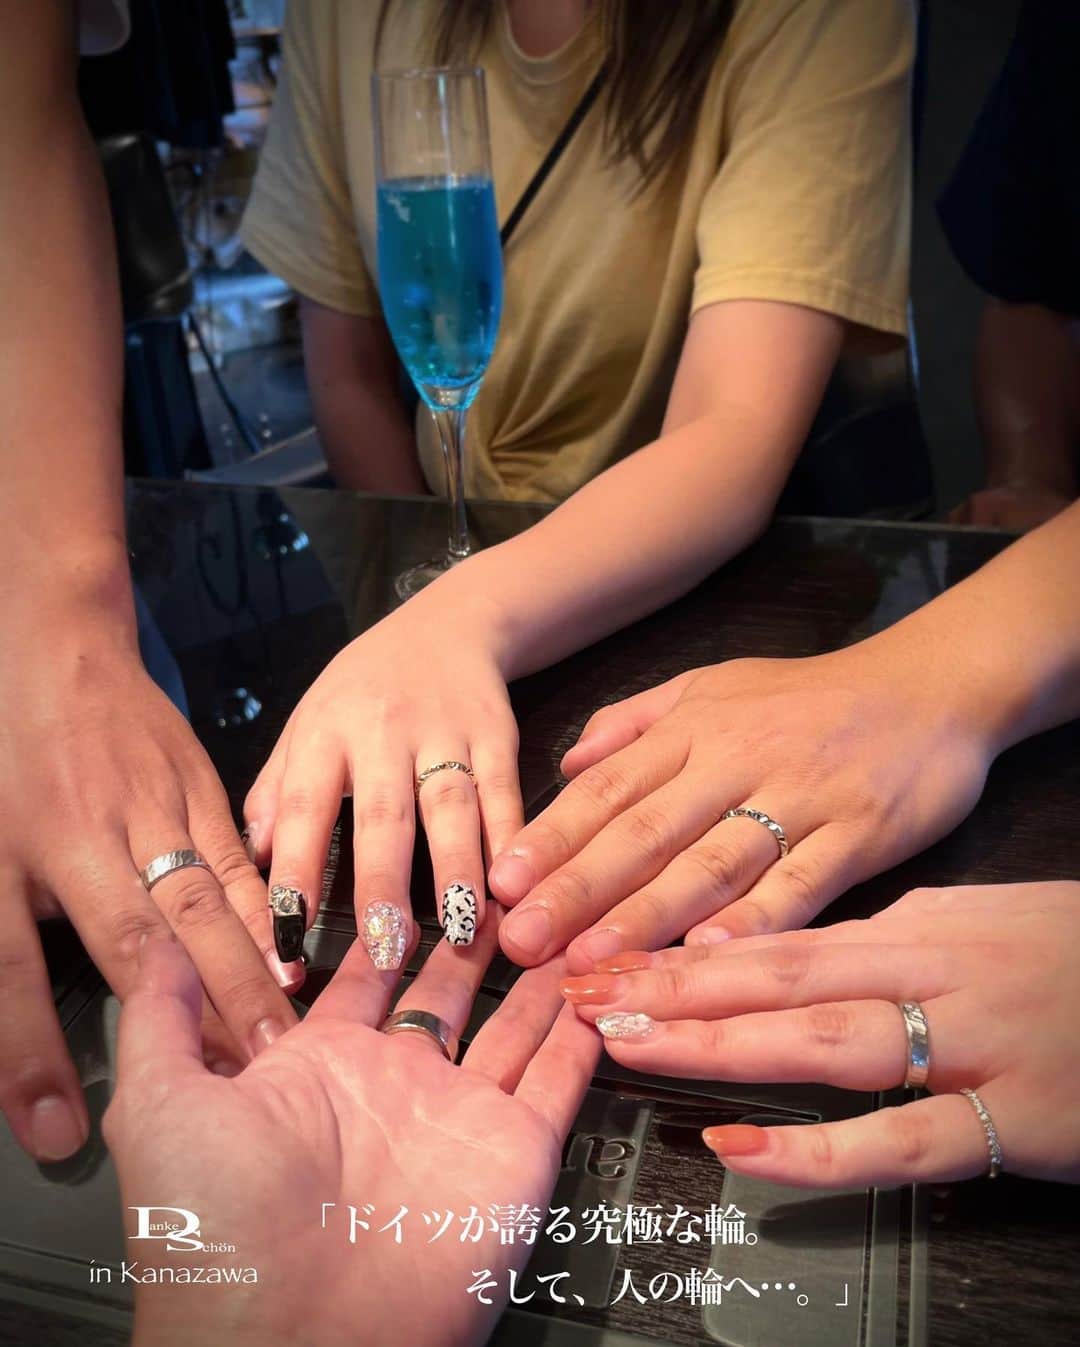 Danke schön ダンケ 金沢 結婚指輪 鍛造さんのインスタグラム写真 - (Danke schön ダンケ 金沢 結婚指輪 鍛造Instagram)「・ ・ ハイ🙌🏻 今日のバウアーさんは ｢お引き渡しの儀」から…。 ・ ・ 5人⁈ ・ ・ そぅ🙌🏻 なんです🙌🏻 ・ ・ 御紹介をくださった御夫妻がケーキ片手に ｢お引き渡しの儀」を見届けようと 駆け付けてくださったんですよ。 ・ ・ これには 店主もびっくり😱 ・ ・ 今まで沢山のお引き渡しの儀を 経験してきましたが ・ ・ 御紹介くださっただけでも 本当に本当に有難い事なのに ・ ・ それを見届けようと しかも出産してまだ2ヵ月の身体で Bayaちゃんまで一緒に ・ ・ 何だかこの御夫妻の人間性と言うか いや人間力｢愛」が深い御夫妻 ・ ・ 御商談中にこの御夫妻の結婚指輪に対する ｢熱量が…」｢熱量が…」のワードが幾度も ・ ・ 身近な人以上に信頼出来る人が 言葉以上にずっと身につけ続けている姿を この数年見ていたからこそ ・ ・ この姿に勝る｢結婚指輪」の説明は 私は無いと思っています。 役目があるとするならちょこっと補足すだけ ・ ・ この仕事をするにあたり 私なりに掲げて来た思いが ・ ・ こうして人から人へ語り継がれていく｢様」を 目の当たりに出来ている事が 幸せを感じたお引き渡しの儀 ・ ・ でもこのお引き渡しを 迎える事が出来たのは ・ ・ 今回のお客様達が 諦めなかったからなのです。 ・ ・ それは初めましては 今年の1月 ・ ・ それから半年以上過ぎて 訪ねてくださって ・ ・ ｢やっと買いに来れた🙌🏻」と ・ ・ 実はあの後も 言われたようにいろいろと指輪を 見に行ったり ふたりで話し合ったりと…。 ・ ・ でも知れば知る程 この指輪が諦められなくなっていて ・ ・ 直ぐに来れなかったのは 毎月のお給料から二人で少しずつ この指輪の為に貯金をしたんです。 ・ ・ もうこの話を聞いた時に 私鳥肌以上に熱いものが込み上げて来てて…。 クッと堪えながらふたりの話を聞いていたんです。 ・ ・ 長年この仕事をしていて 沢山のお客様達と出会い向き合い ・ ・ その中で射止める人 モノは良いのは分かるけど…。 ・ ・ の ・ ・ ｢けど…の」人達は 分かるけど選ばない。 ・ ・ 早い話が 諦めたんだと思う。 ・ ・ 今回のお客様達は本当に 1月からこの日まで｢恋い焦がれ」 ・ ・ そして🙌🏻 射止めくださった仲間です🤝 ・ ・ ふたりだけの｢結婚指輪」それ以上に 価値がある指輪って こう言う思いが加わってこそ言える指輪の事を 言うのではないでしょうか？ ・ ・ でも言うのは簡単 でもそれを実践する人はまだまだ ひと握りだと思います。 ・ ・ きっとおふたりは この恋い焦がれていた時間も含め ・ ・ これから先ずっと 愛用して頂きながら今度は ・ ・ いやいや今日から立場が変わり 『語りべ』になるんだろうな〜。 ・ ・ 鍛造の指輪が凄い訳でもなく 私が捉えたクリスチャンバウアーは ・ ・ 指輪にそこまでも 興味が無かった人や ・ ・ 指輪なんてそんなに大差ないでしょう！と 思っていた人 ・ ・ そんな人にでさえ 心を動かしてしまう ・ ・ 何か不思議なモノが宿っているのが クリスチャンバウアーの指輪だと思います。 ・ ・ 何だか本当に今回の お引き渡しは今までに無い 愛が溢れた｢お引き渡しの儀」でした。 ・ ・ みんなみんなの ｢愛を感じた」時間 ・ ・ みんなの思いのおかげで 私の理想が又！一つ現実となり 輪が広がった｢お引き渡しの儀」でした。 ・ ・ ・ ・ ・  【工業系 鍛造削り出し】 🇩🇪クリスチャンバウアー 専門店 ・ ・ ワンランク上をいくノウハウの クリスチャンバウアーの選び方なら 『Danke schön 』 ・ ・ ・ —— 𝐃𝐚𝐧𝐤𝐞——— ▪︎ Instagramプロフィール 🔜 @danke2005  —————————————————————𝐒𝐜𝐡⍥𝐧——— ・ ・ #クリスチャンバウアー金沢 #鍛造指輪 #鍛造リング #結婚指輪 #結婚指輪オーダー #切削加工 #結婚指輪探し #結婚指輪選び #指輪探し #指輪選び #マリッジリング #結婚指輪金沢 #金沢結婚指輪 #セカンドリング #結婚指輪買い替え #地金屋鍛造 #ブライダルリング #結婚記念日 #ベビーリング #ドイツリング #自分へのご褒美 #クリスチャンバウアーダンケ #クリスチャンバウアーdanke #クリスチャンバウアー  ------------------------------------------✈︎ ---------  鍛造削り出し 🇩🇪クリスチャンバウアー 専門店 『𝐃𝐚𝐧𝐤𝐞 𝐬𝐜𝐡⍥𝐧』 ・ • 営業時間 am11:00〜pm9:00 • 定休日 : 木曜日 • 駐車場 : 店舗前OK • ご予約 : 優先 ・ ・ ——𝐃𝐚𝐧𝐤𝐞——————————————— ▪︎トップページ 🔜 @danke2005 ———————————————————-𝐒𝐜𝐡⍥𝐧—————」9月4日 18時00分 - danke2005